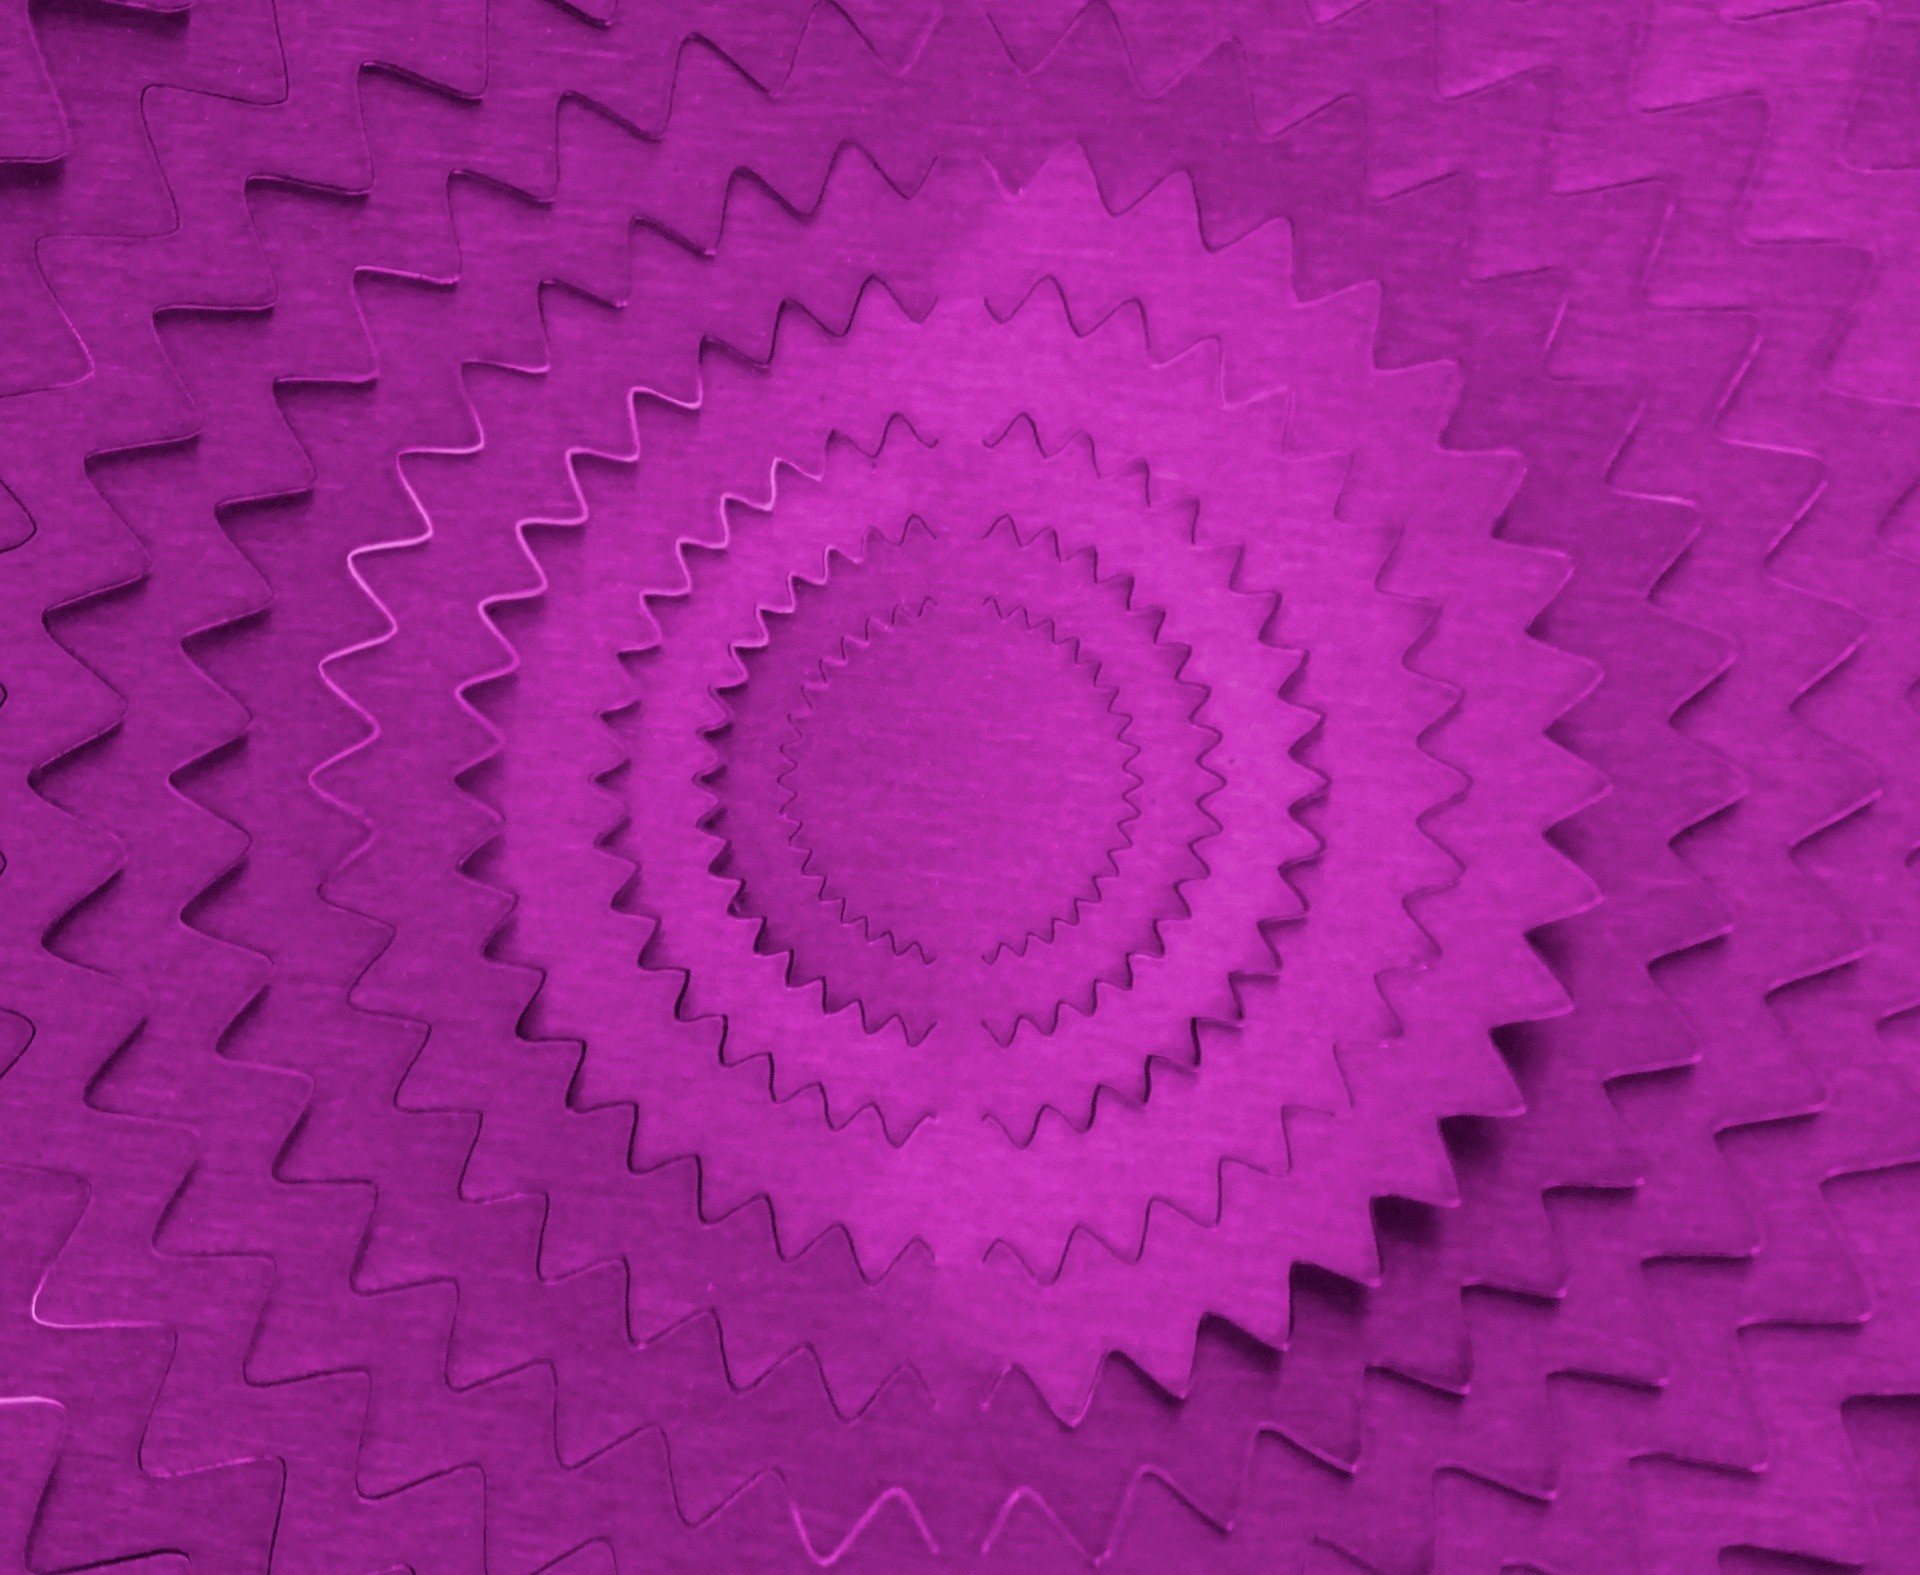 1920x1575 1920 x 1575 px, â½ 2 times. purple backgrounds pattern patterns texture  textures abstract ...